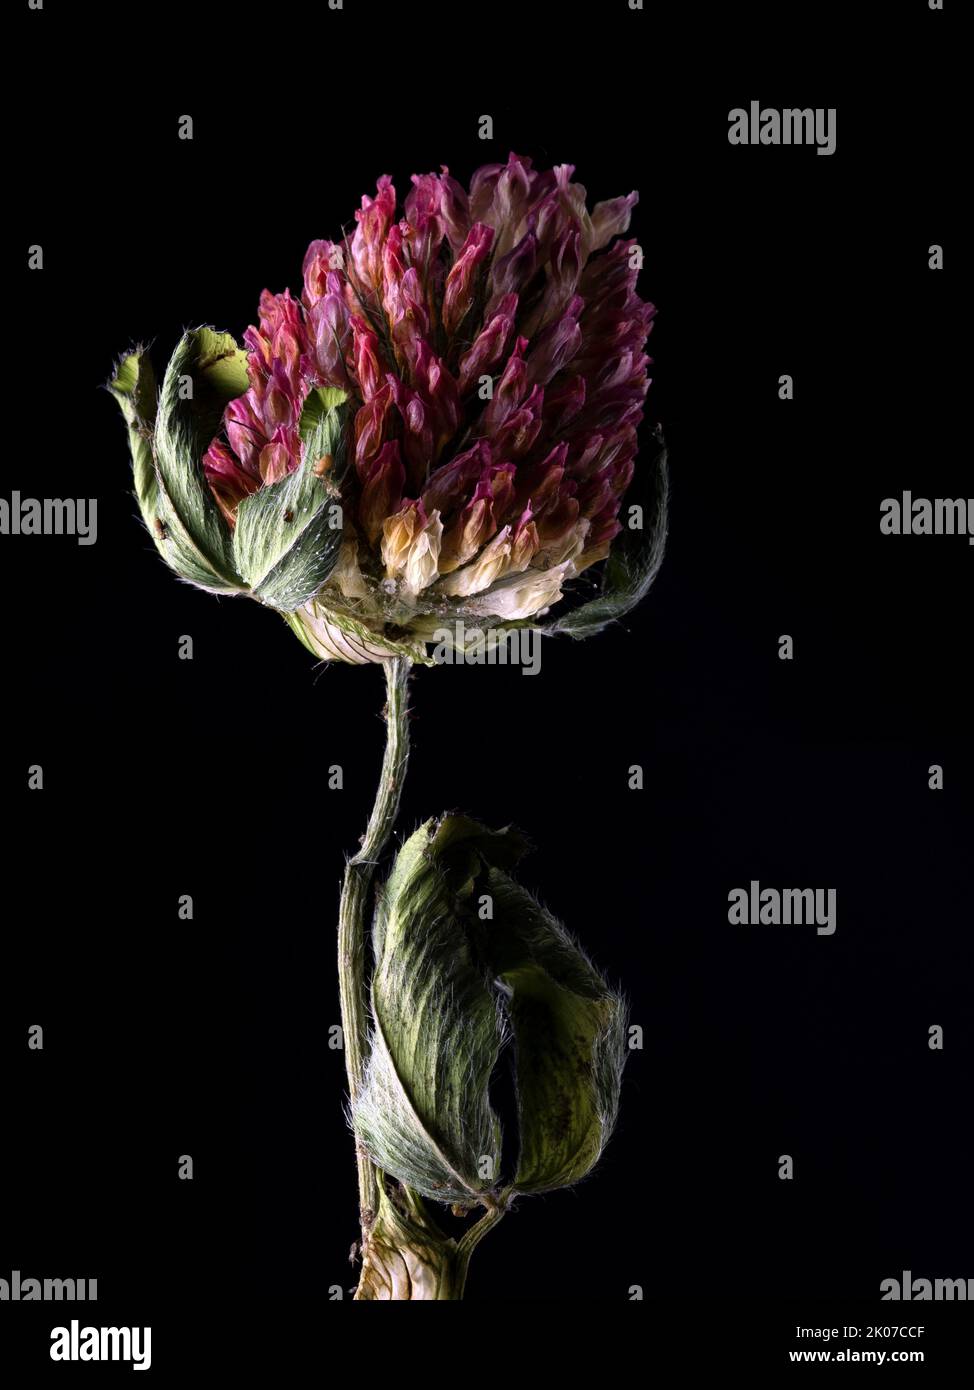 Retrato de la flor del trébol - Parte 2, flor marchita y marchita Foto de stock